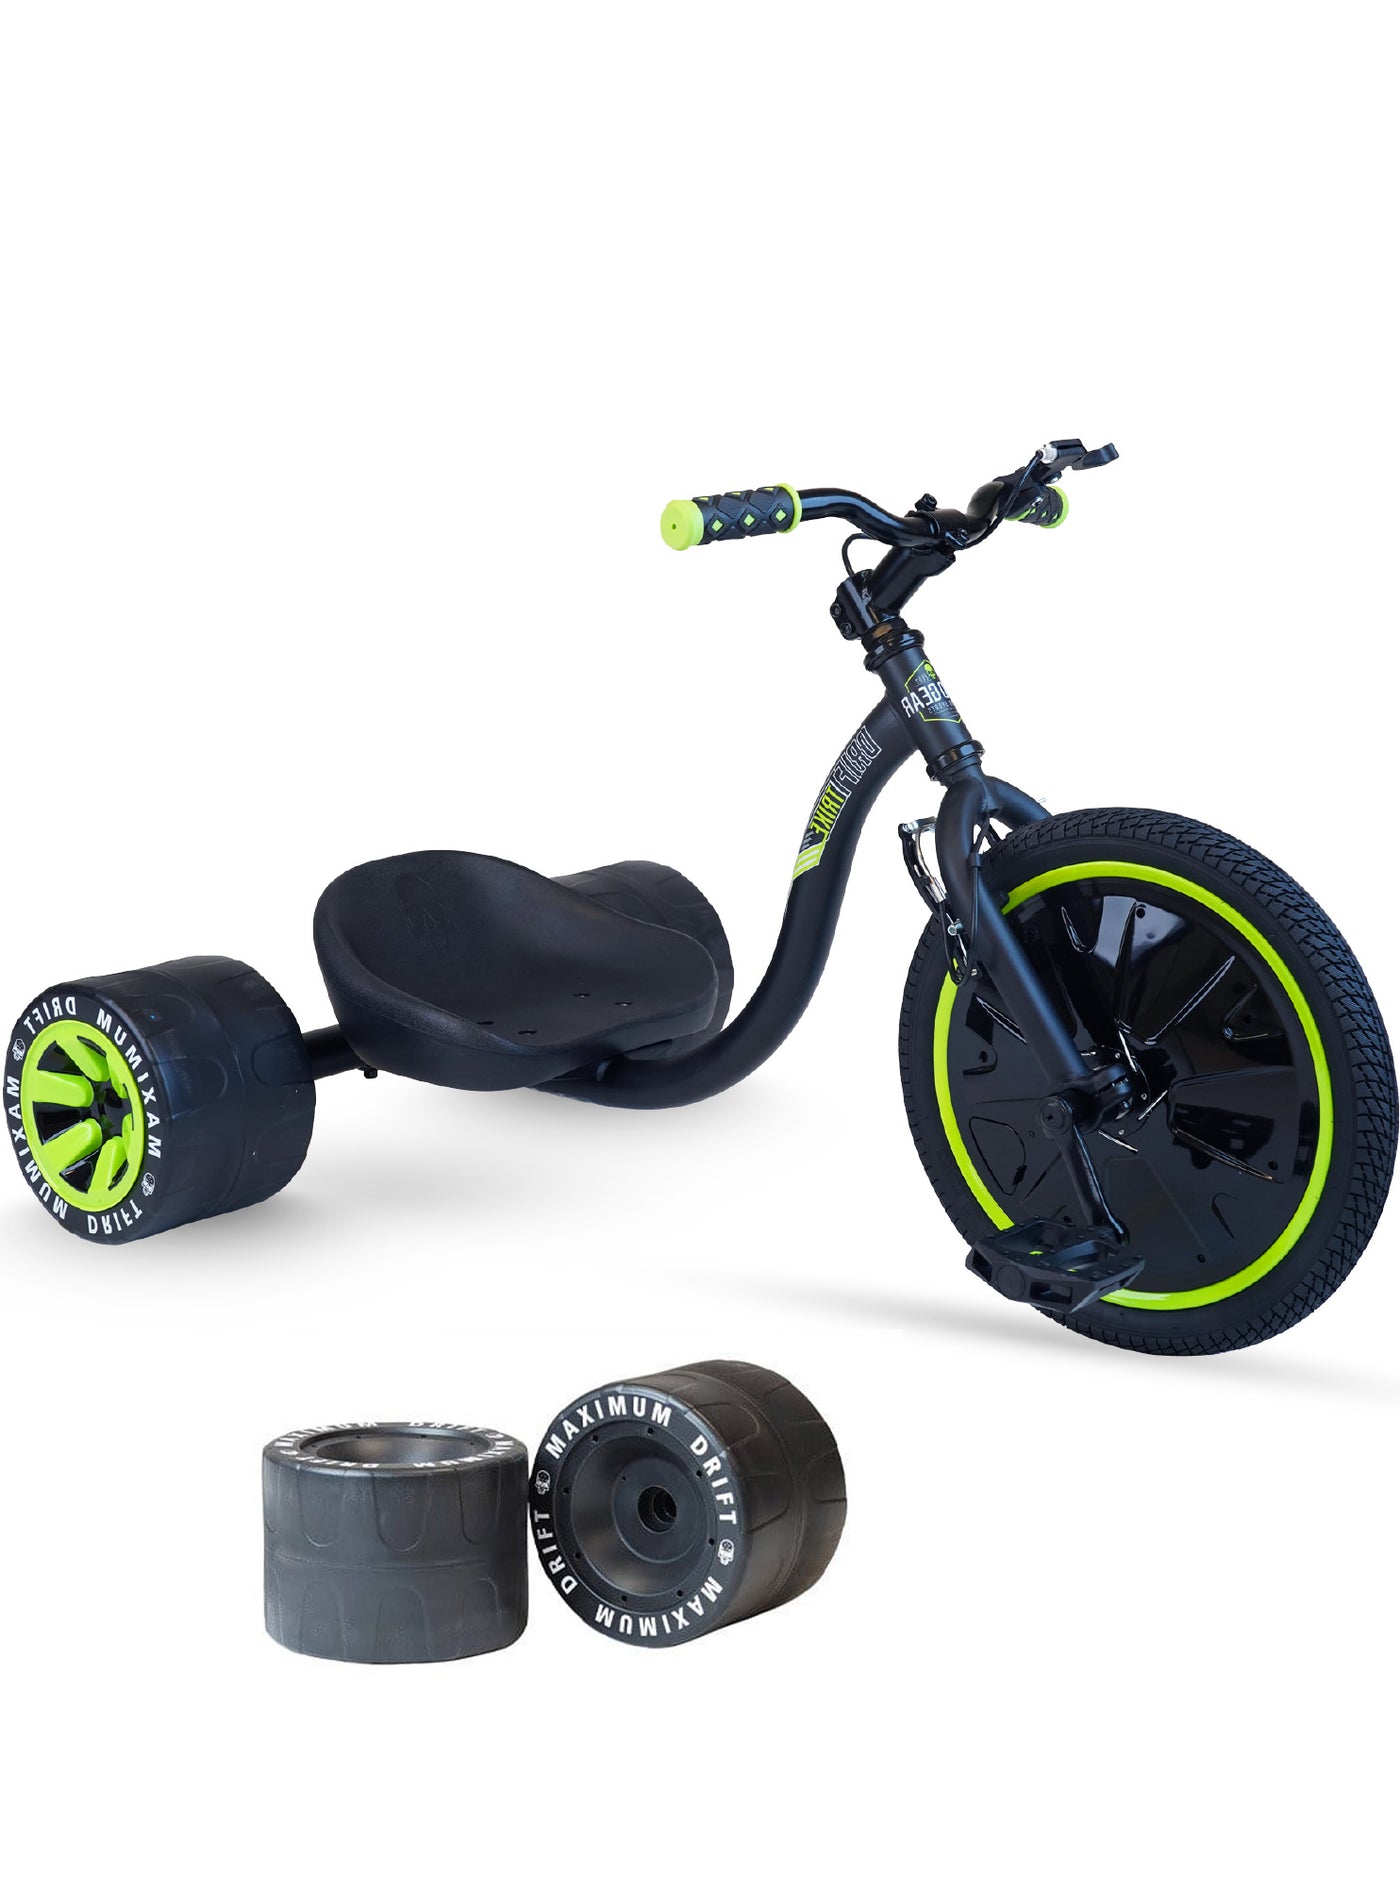 kids drift trike madd gear green machine huffy black children tricycle slider